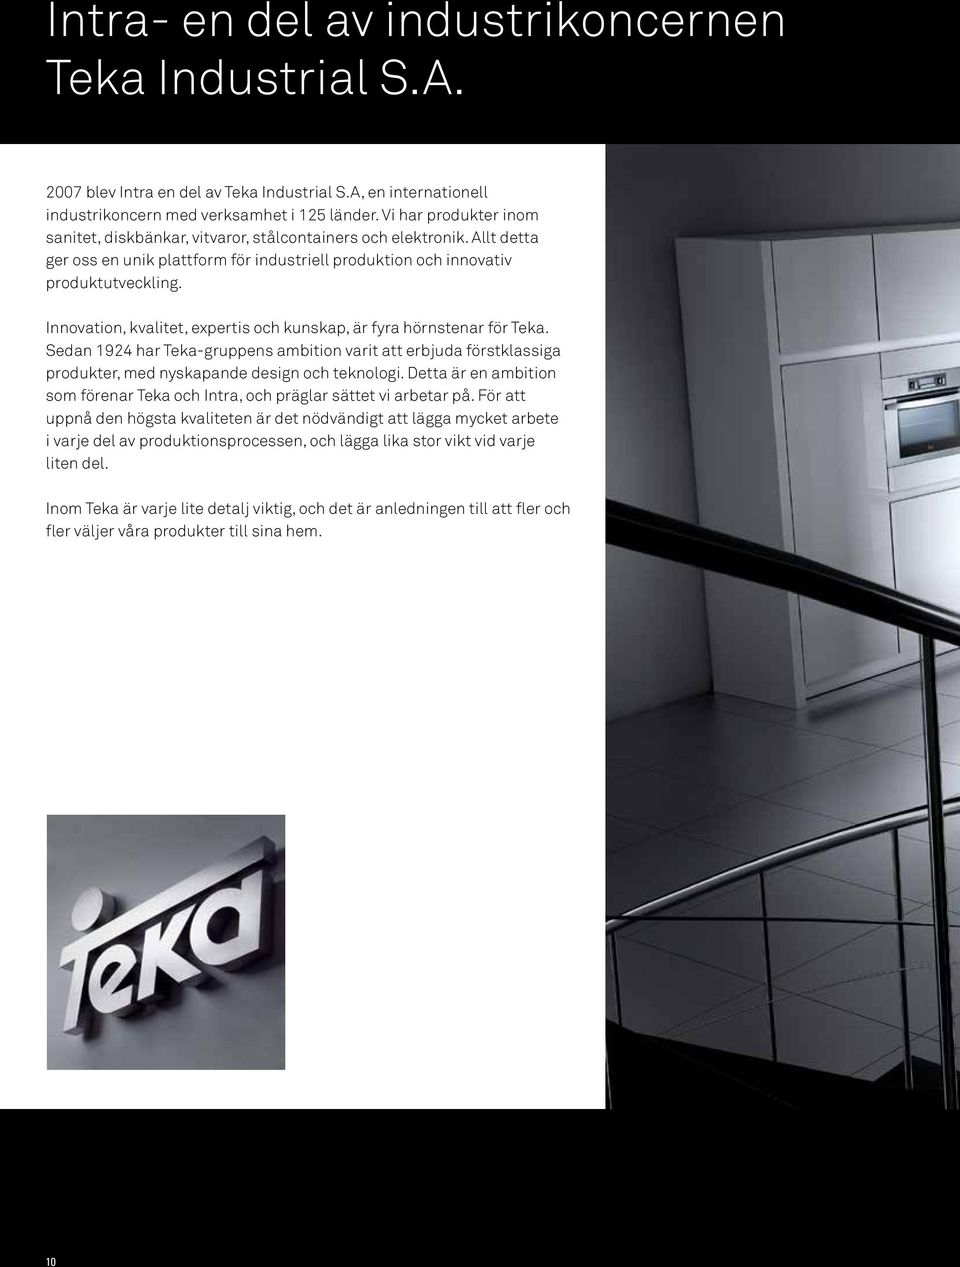 Innovation, kvalitet, expertis och kunskap, är fyra hörnstenar för Teka. Sedan 1924 har Teka-gruppens ambition varit att erbjuda förstklassiga produkter, med nyskapande design och teknologi.